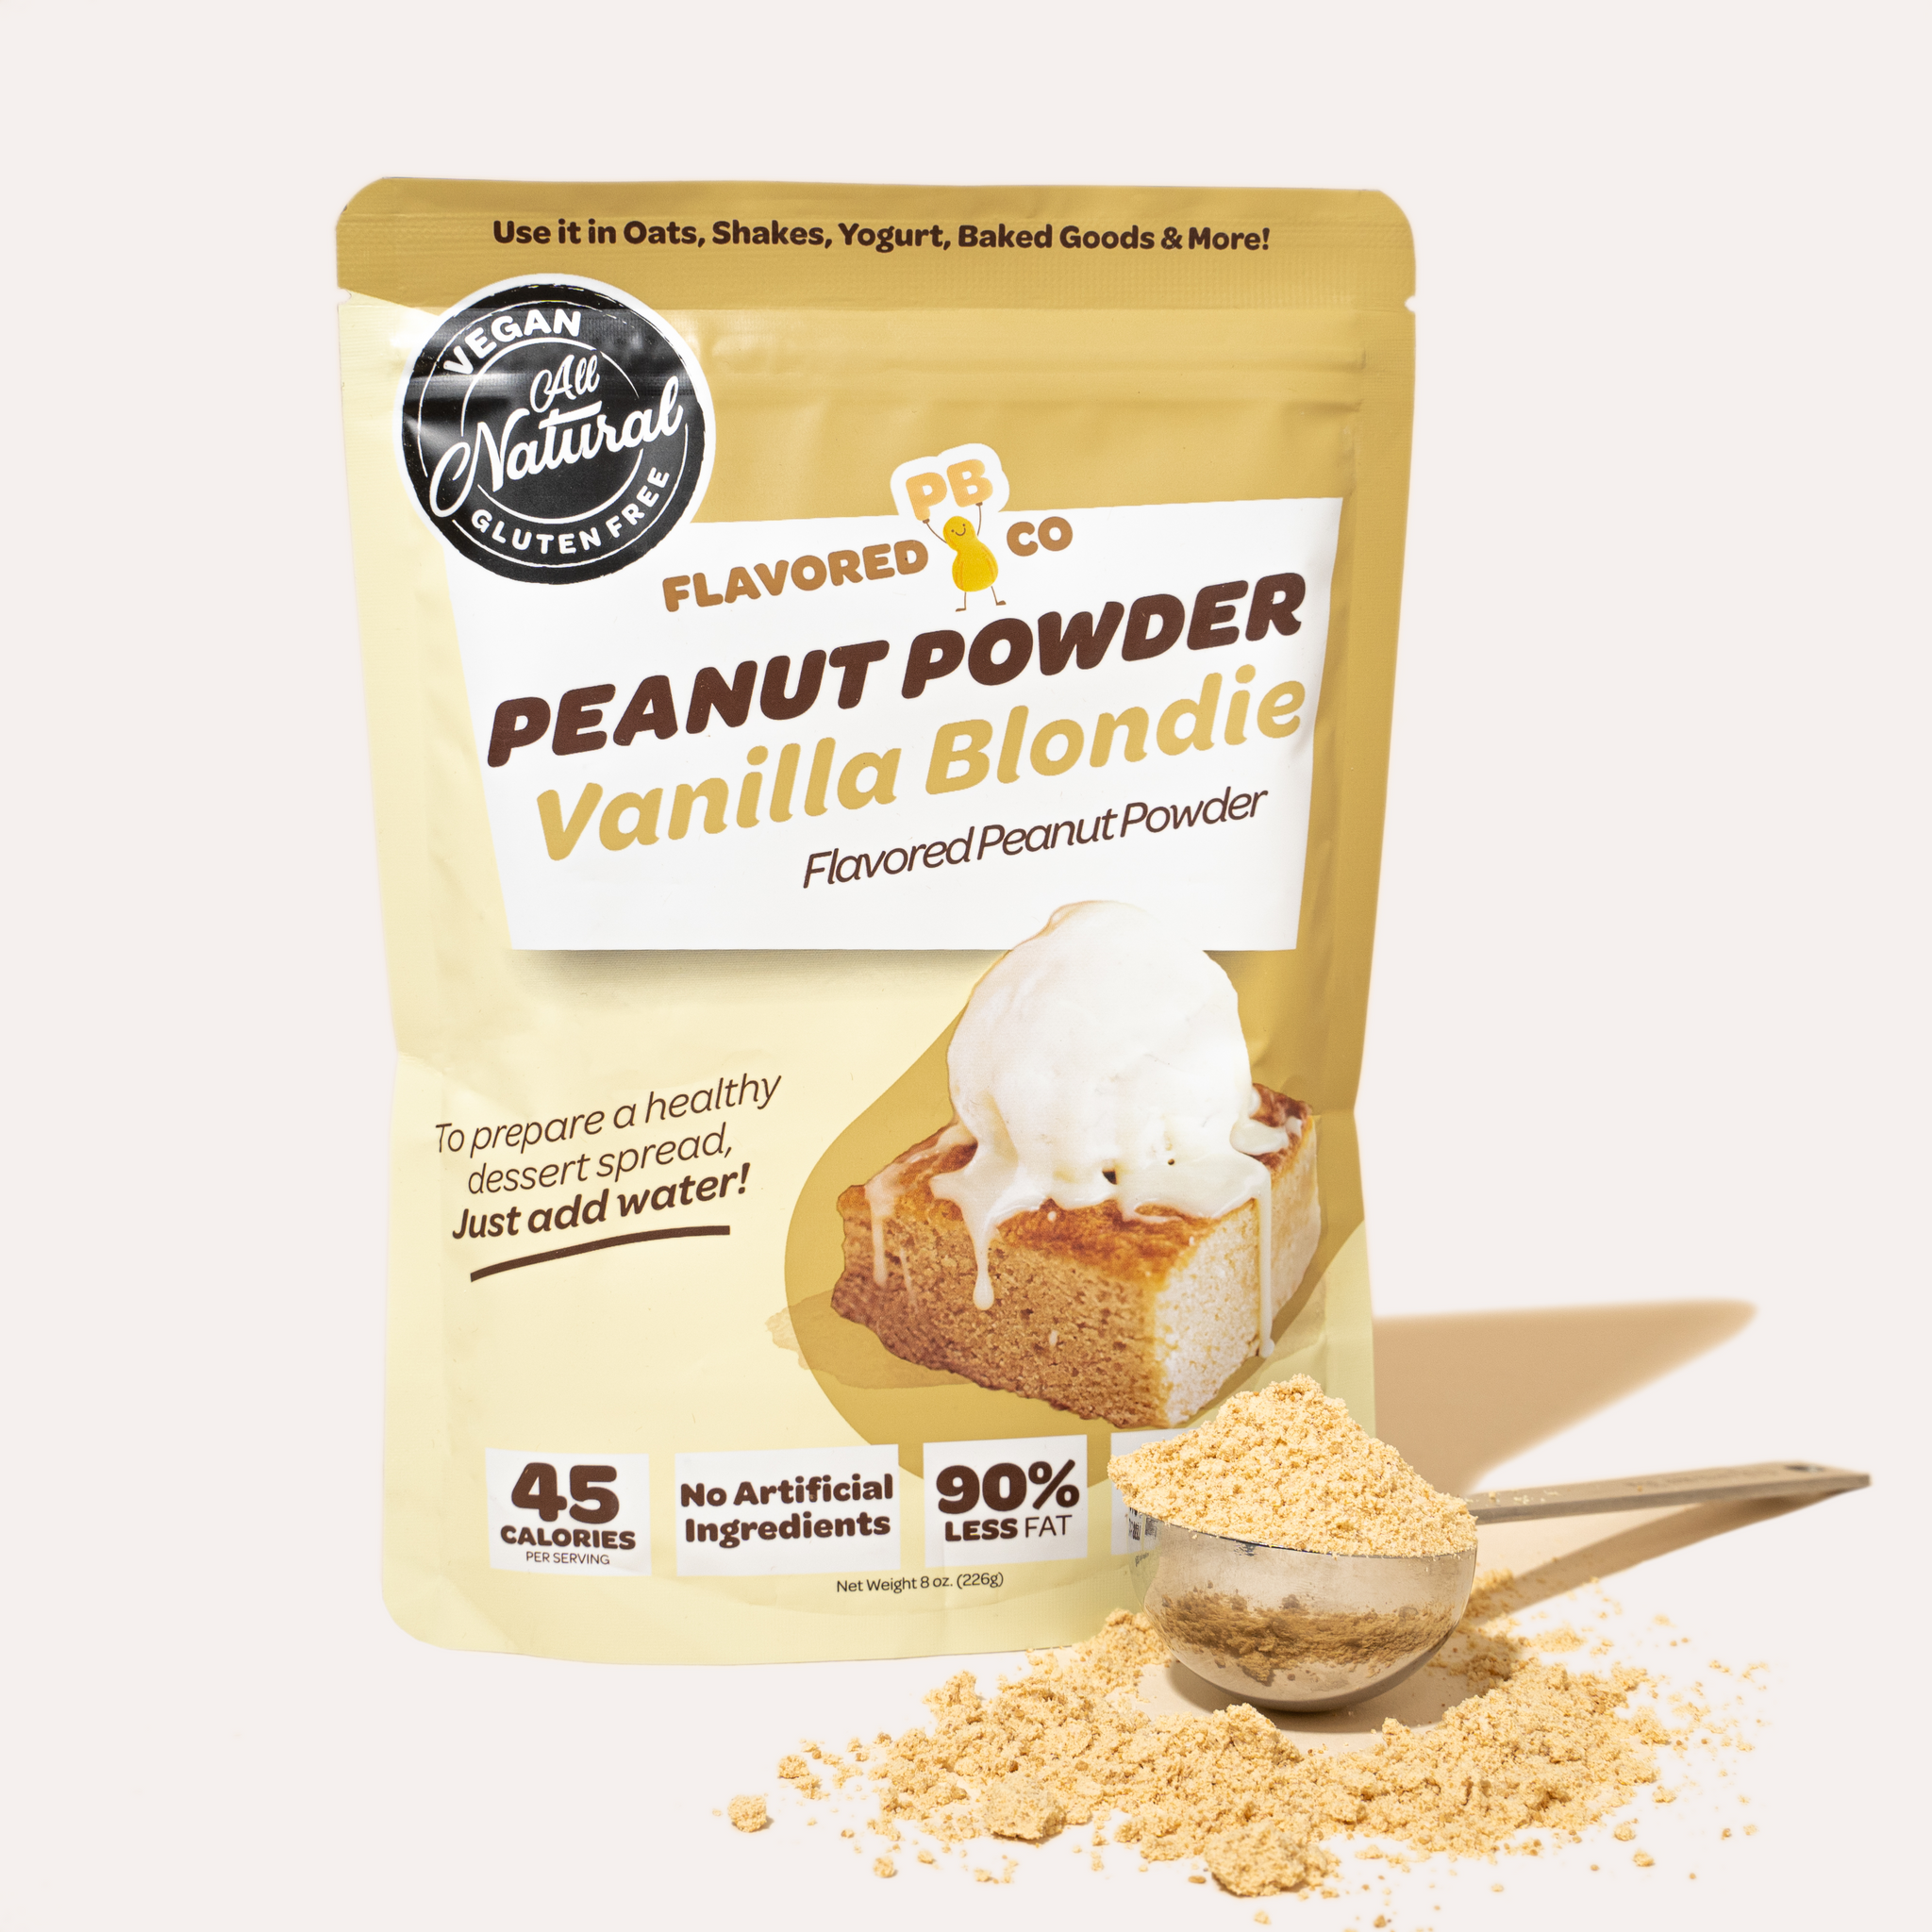 Vanilla Blondie Flavored Peanut Powder